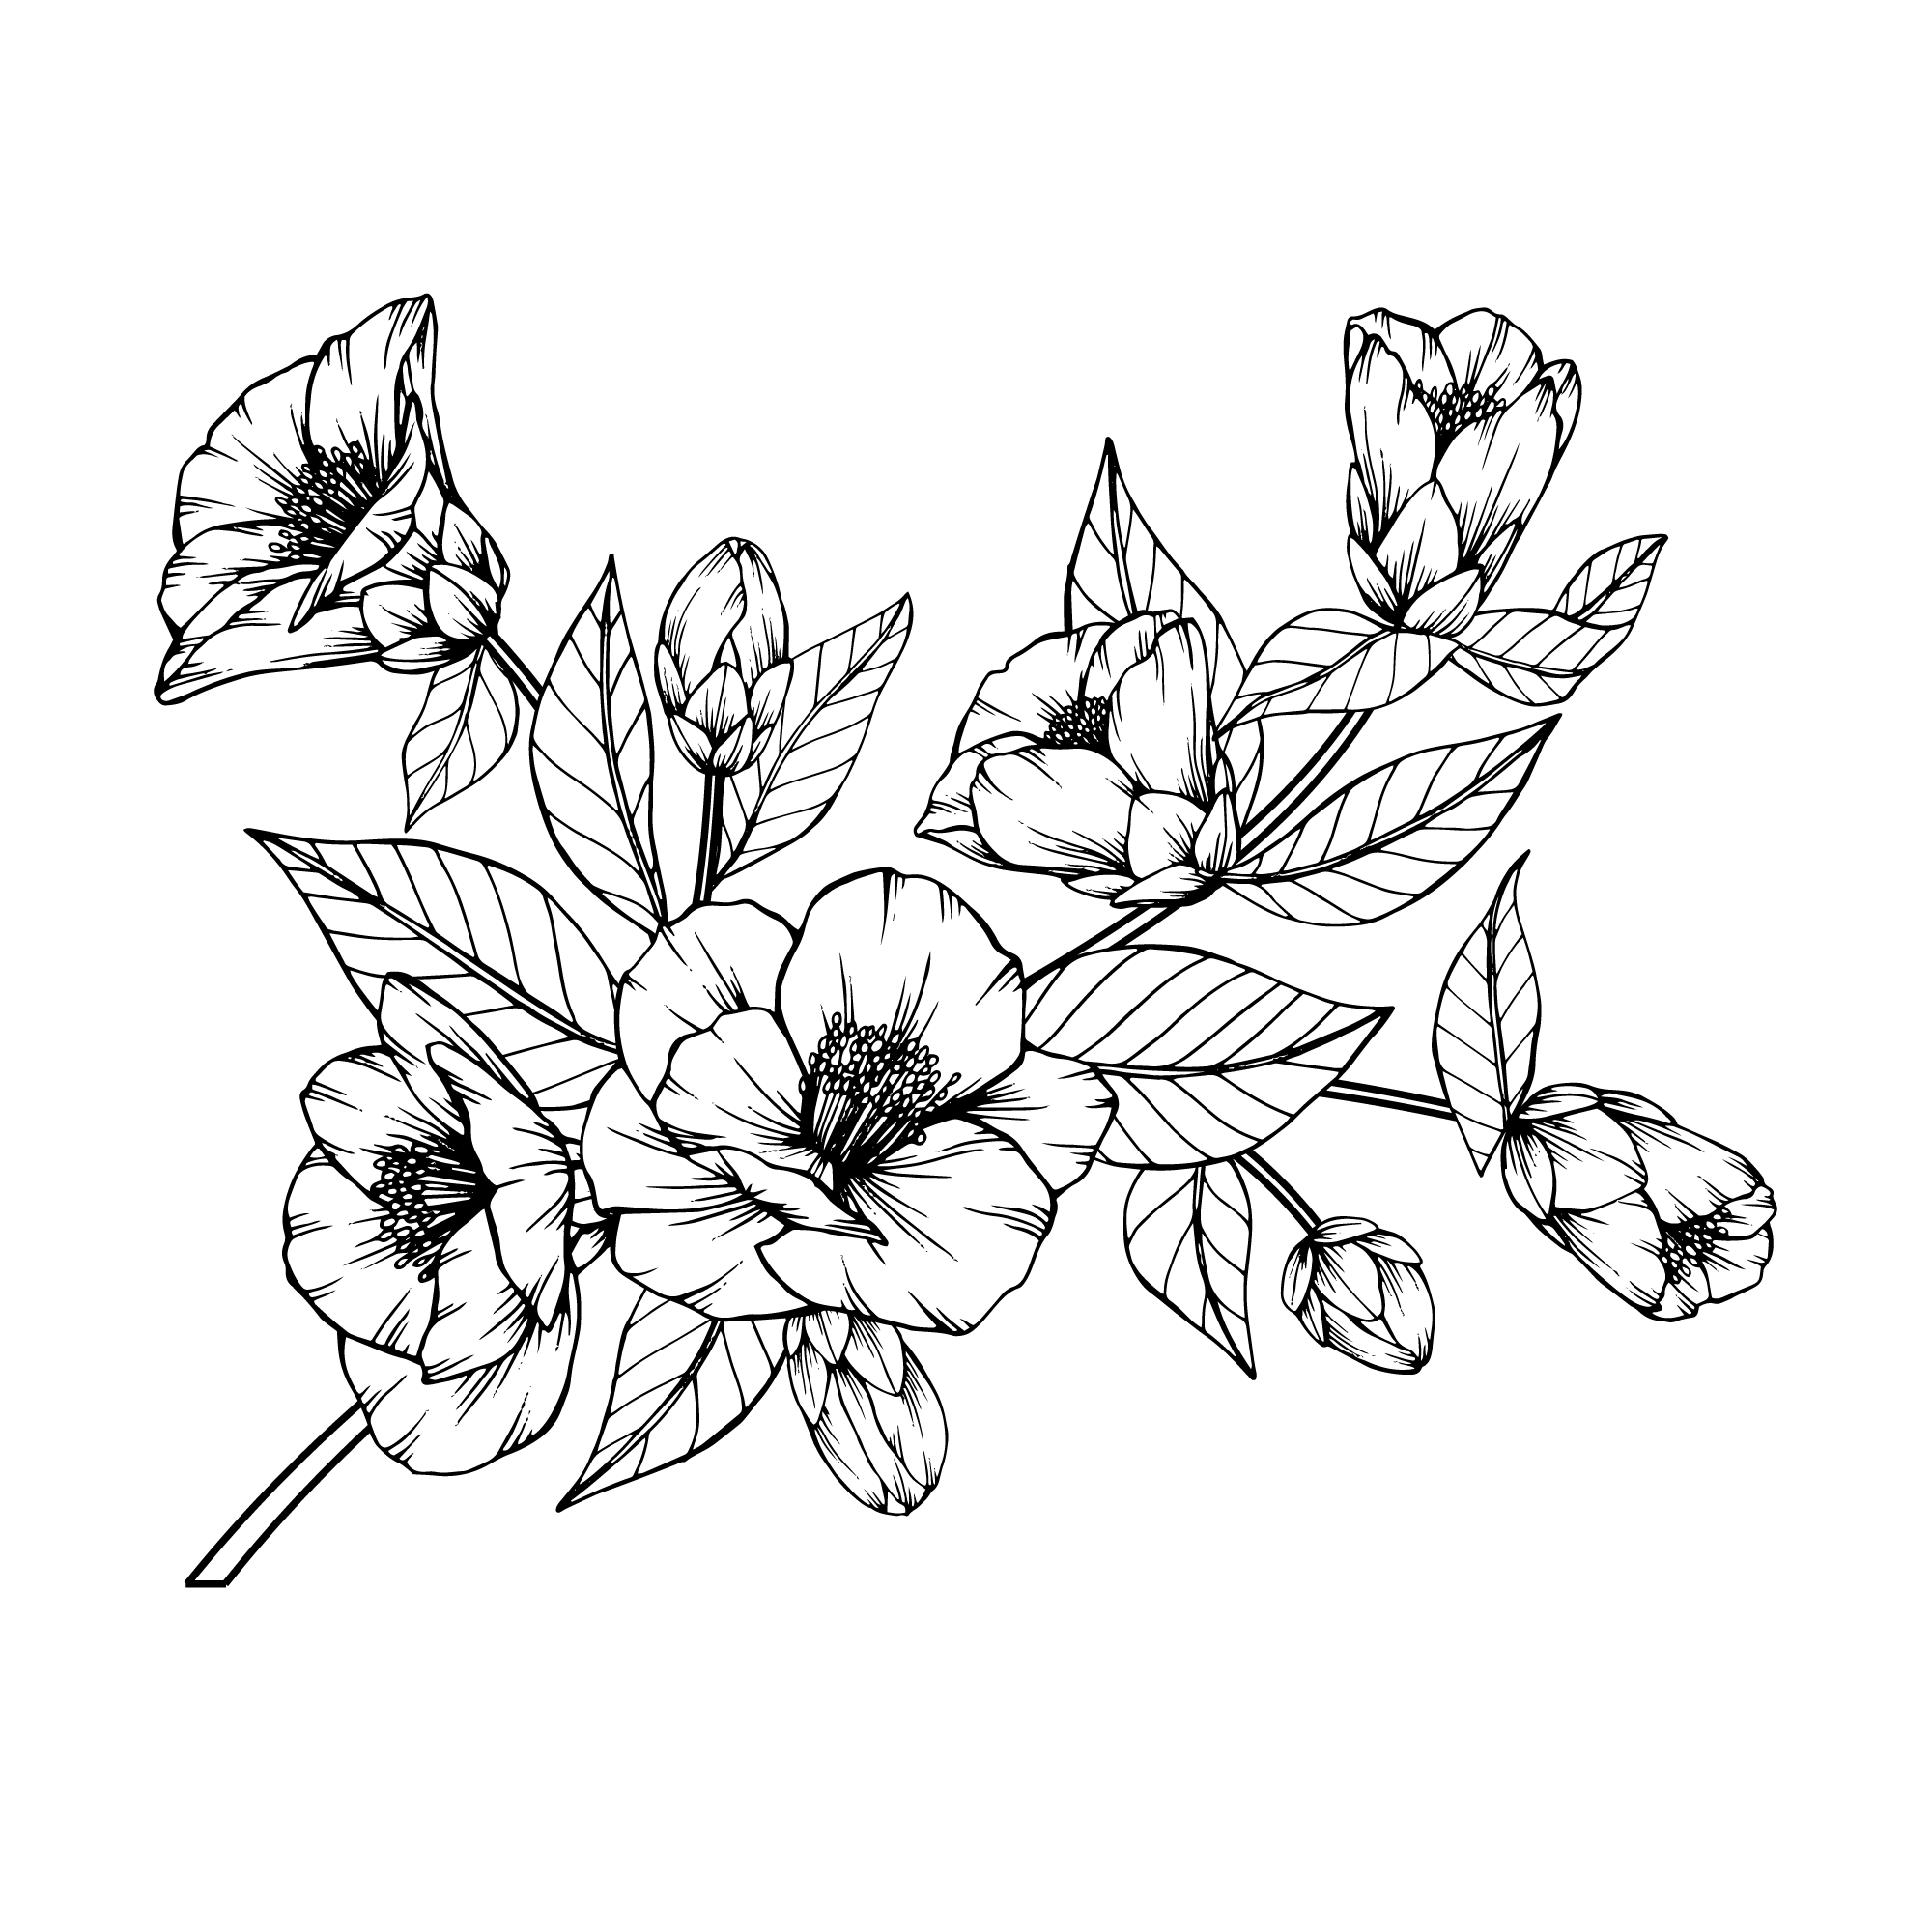 Camellia (Tea Plant)